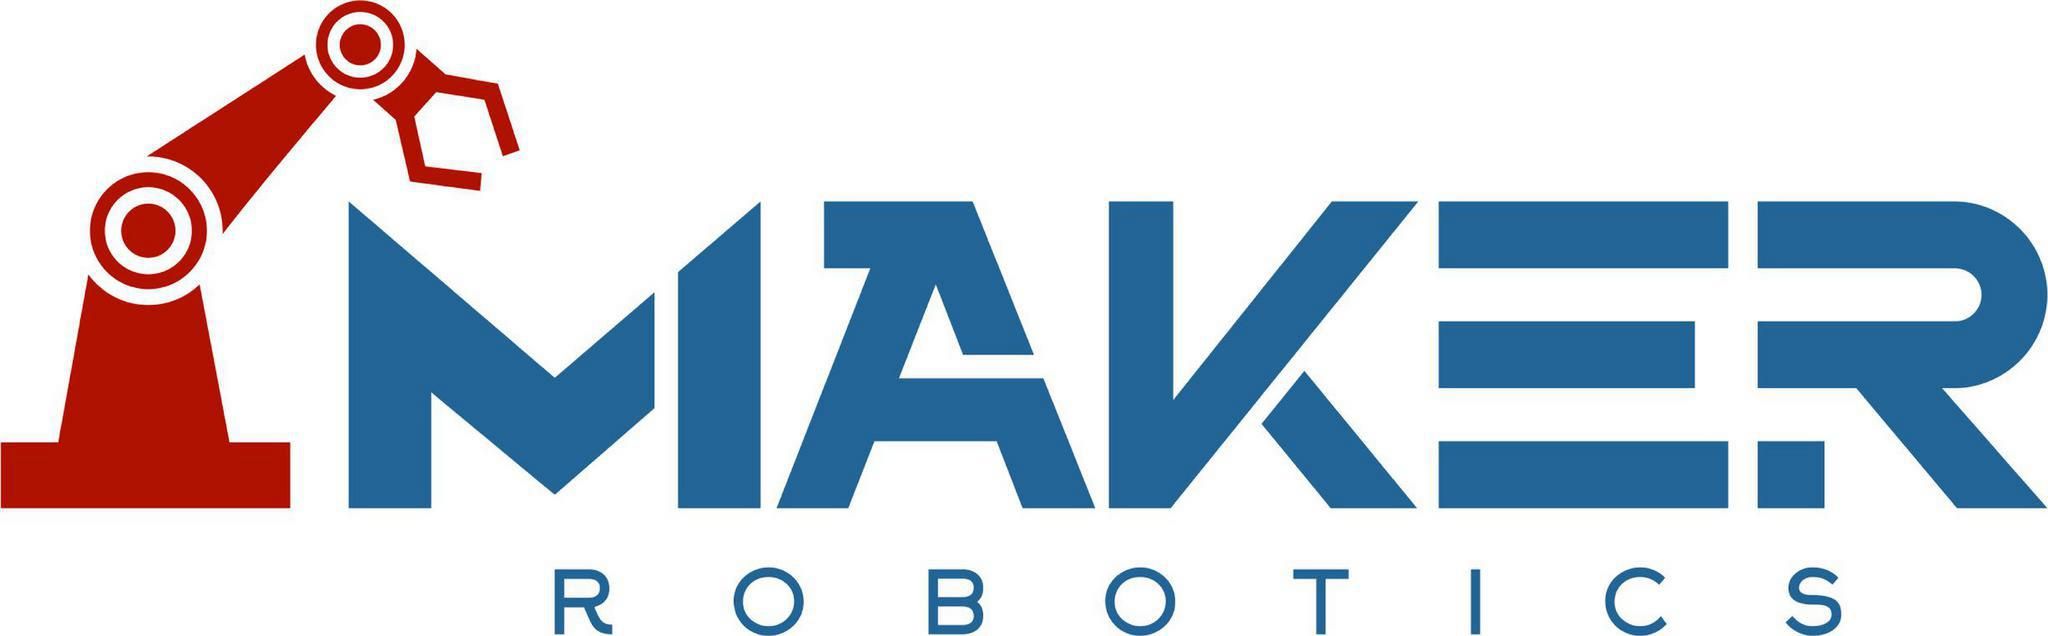 Maker Robotics